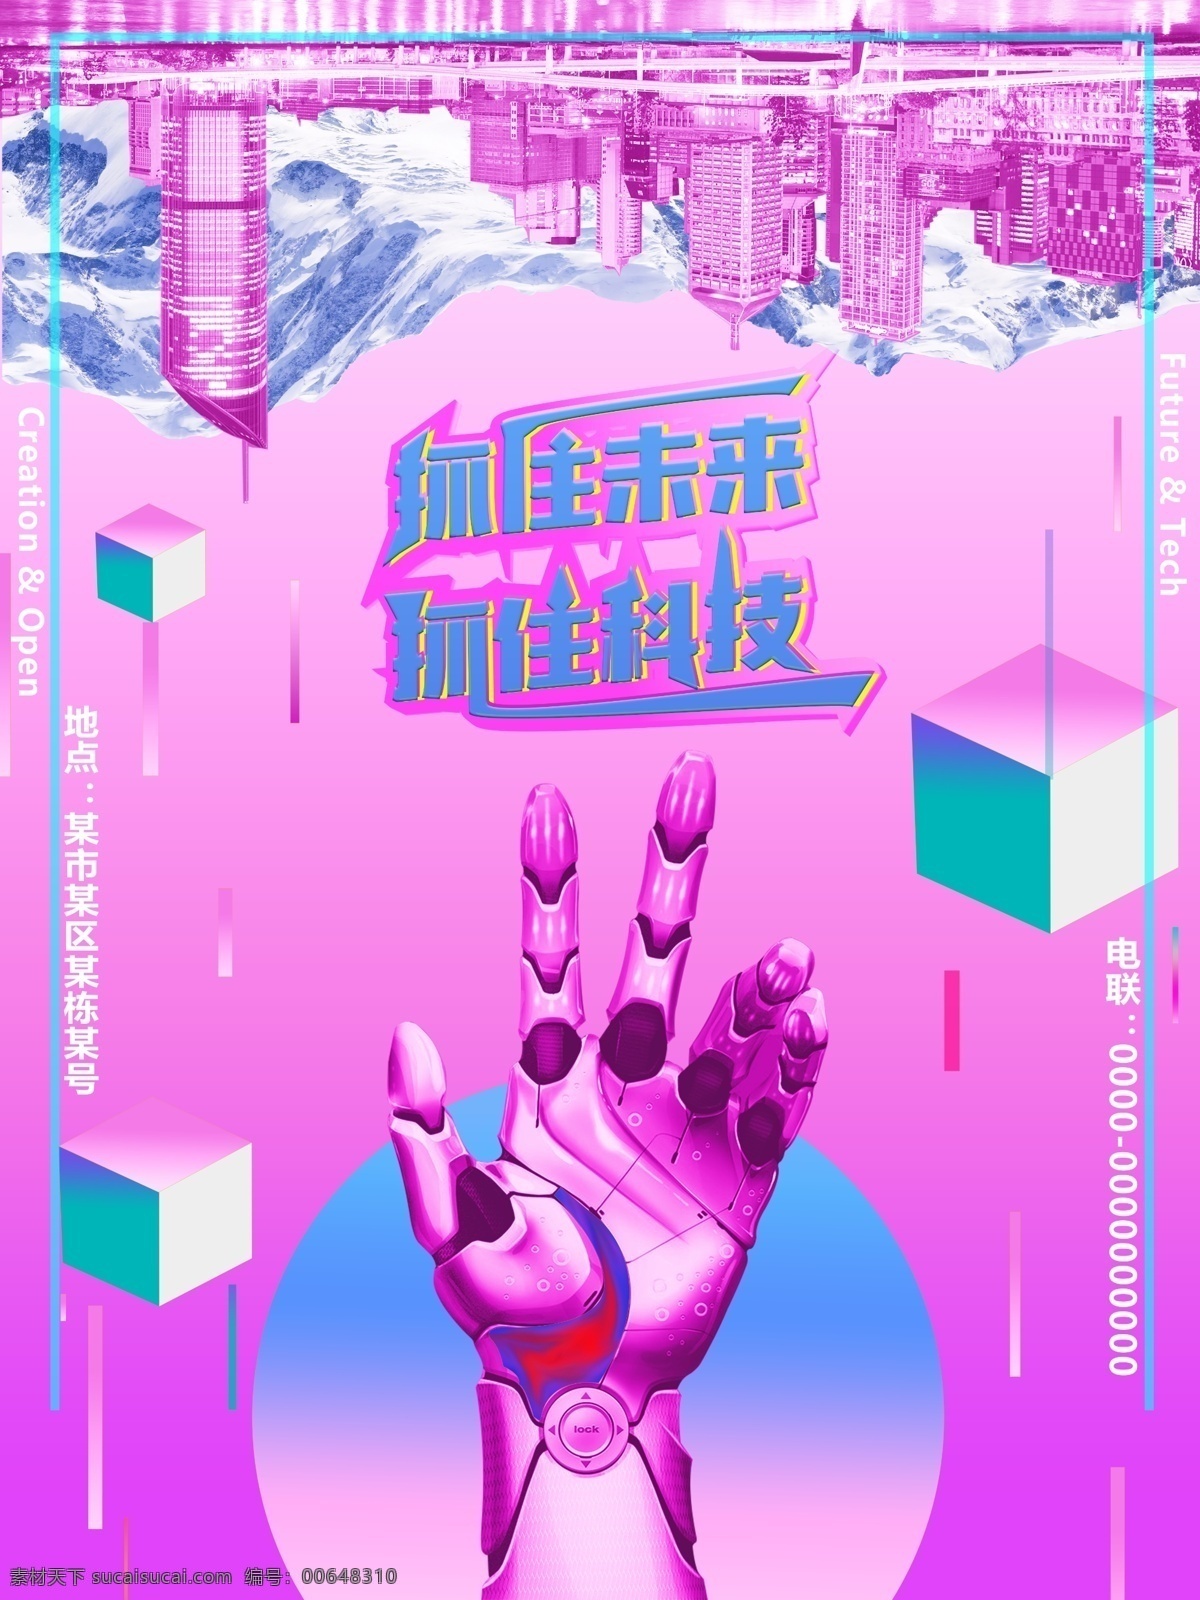 紫 蓝色 梦幻 风 创意 未来 海报 抓住 科技 紫蓝色 梦幻风 创意合成